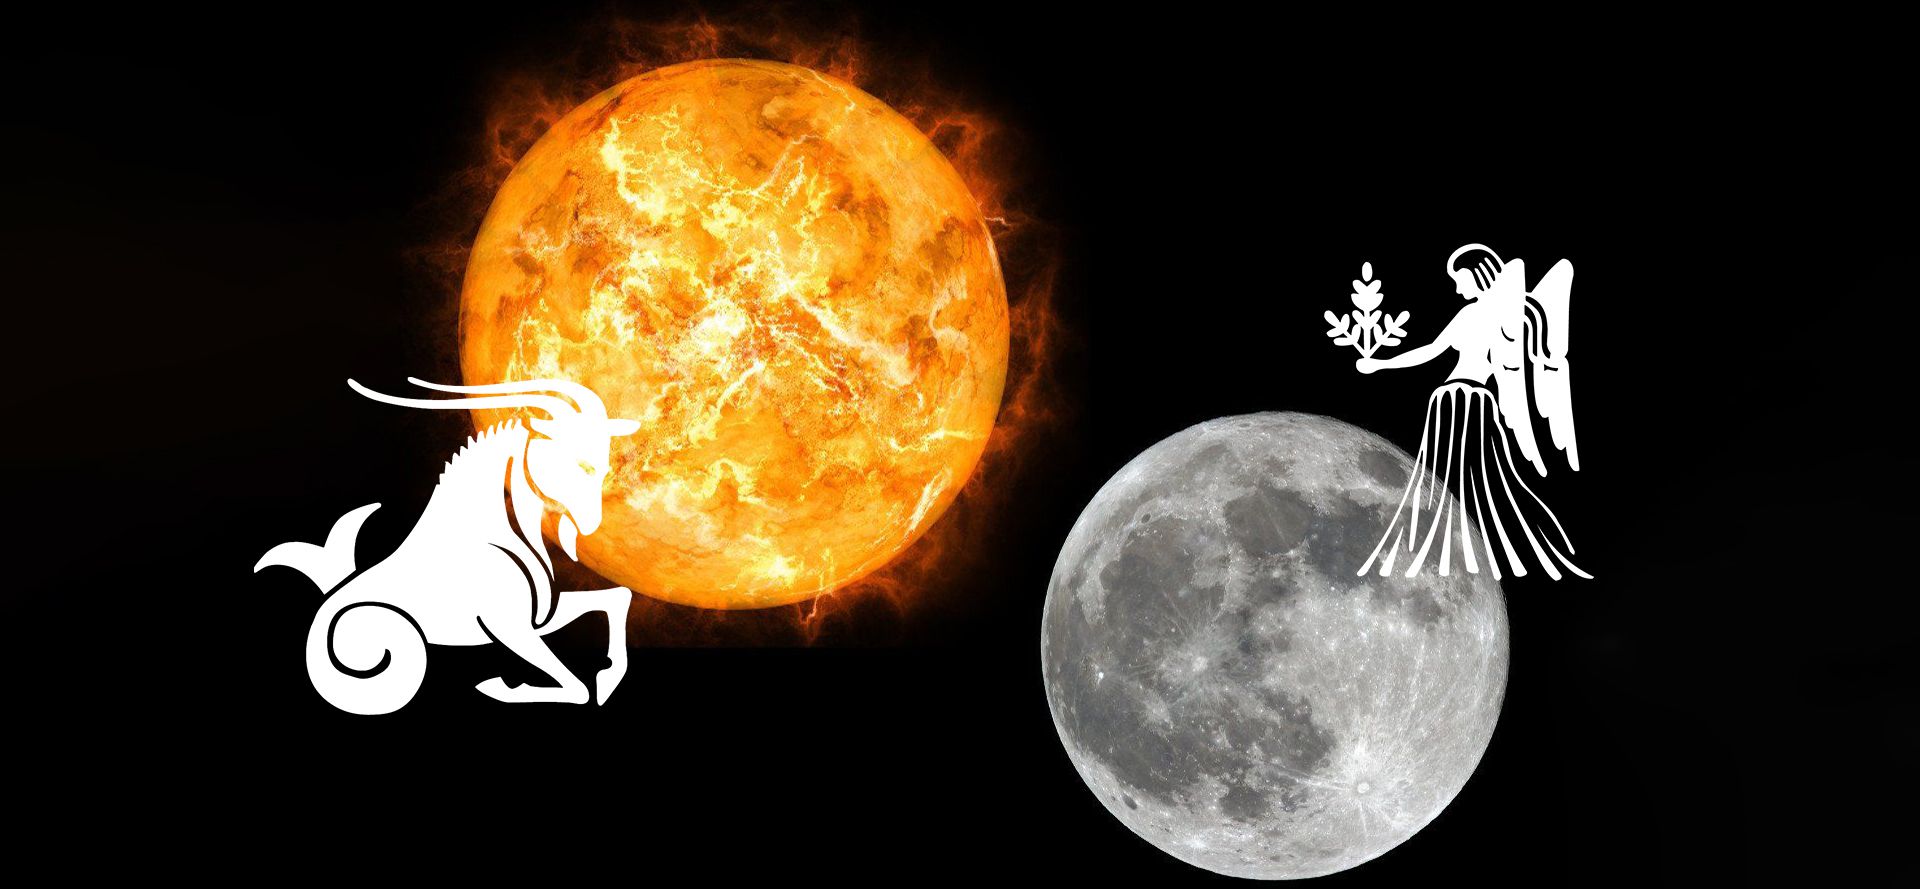 Capricorn Sun and Virgo Moon.